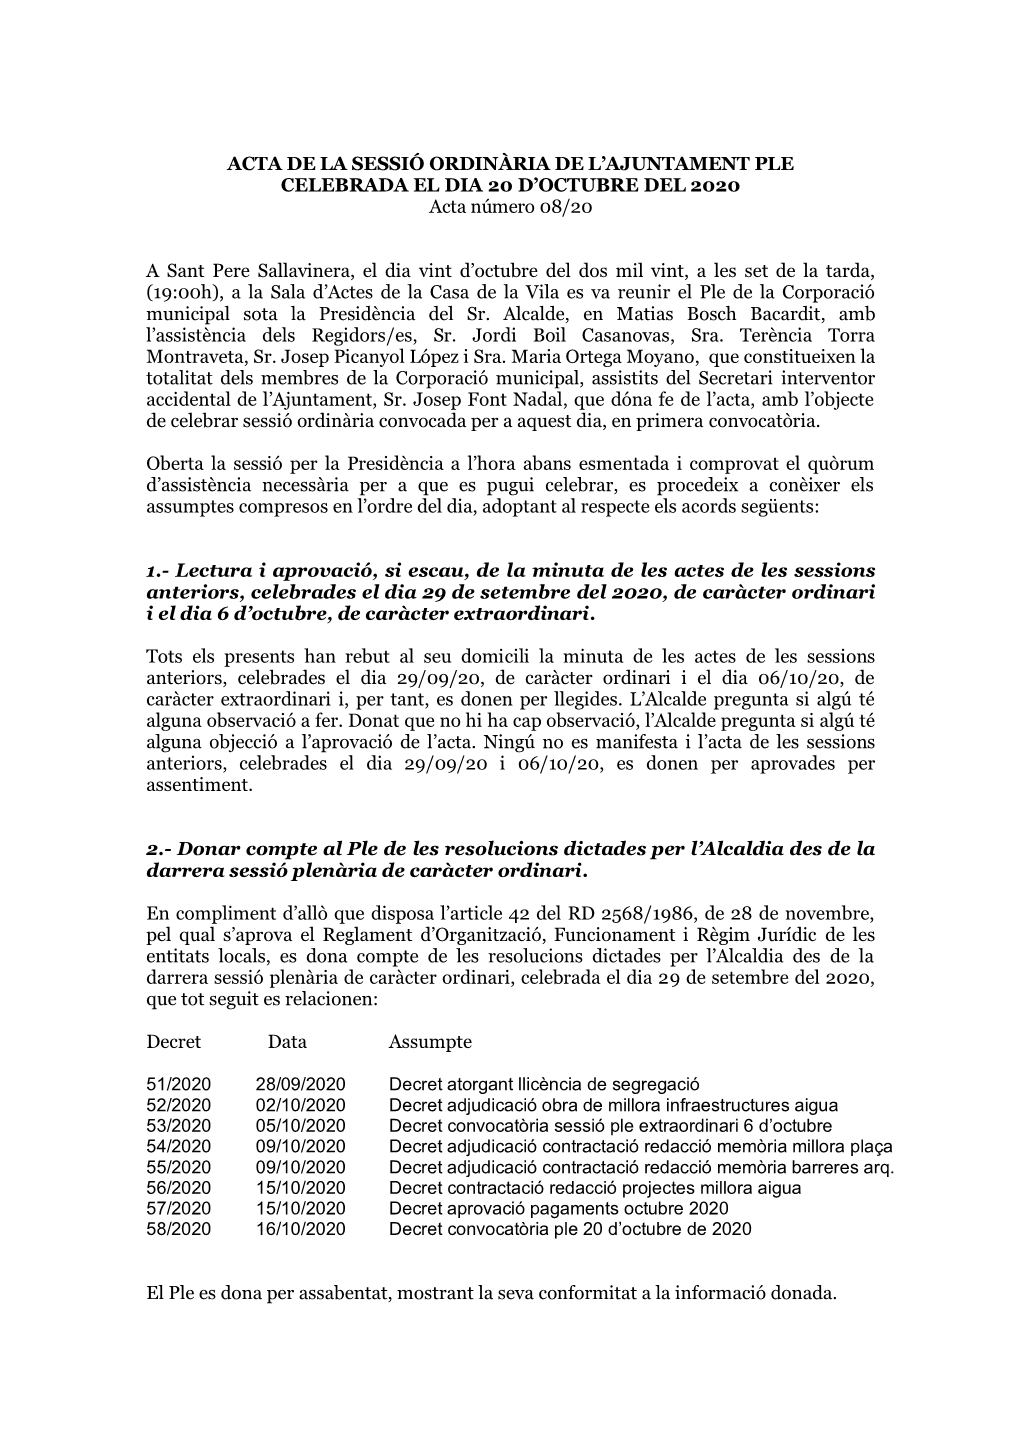 ACTA DE LA SESSIÓ ORDINÀRIA DE L’AJUNTAMENT PLE CELEBRADA EL DIA 20 D’OCTUBRE DEL 2020 Acta Número 08/20